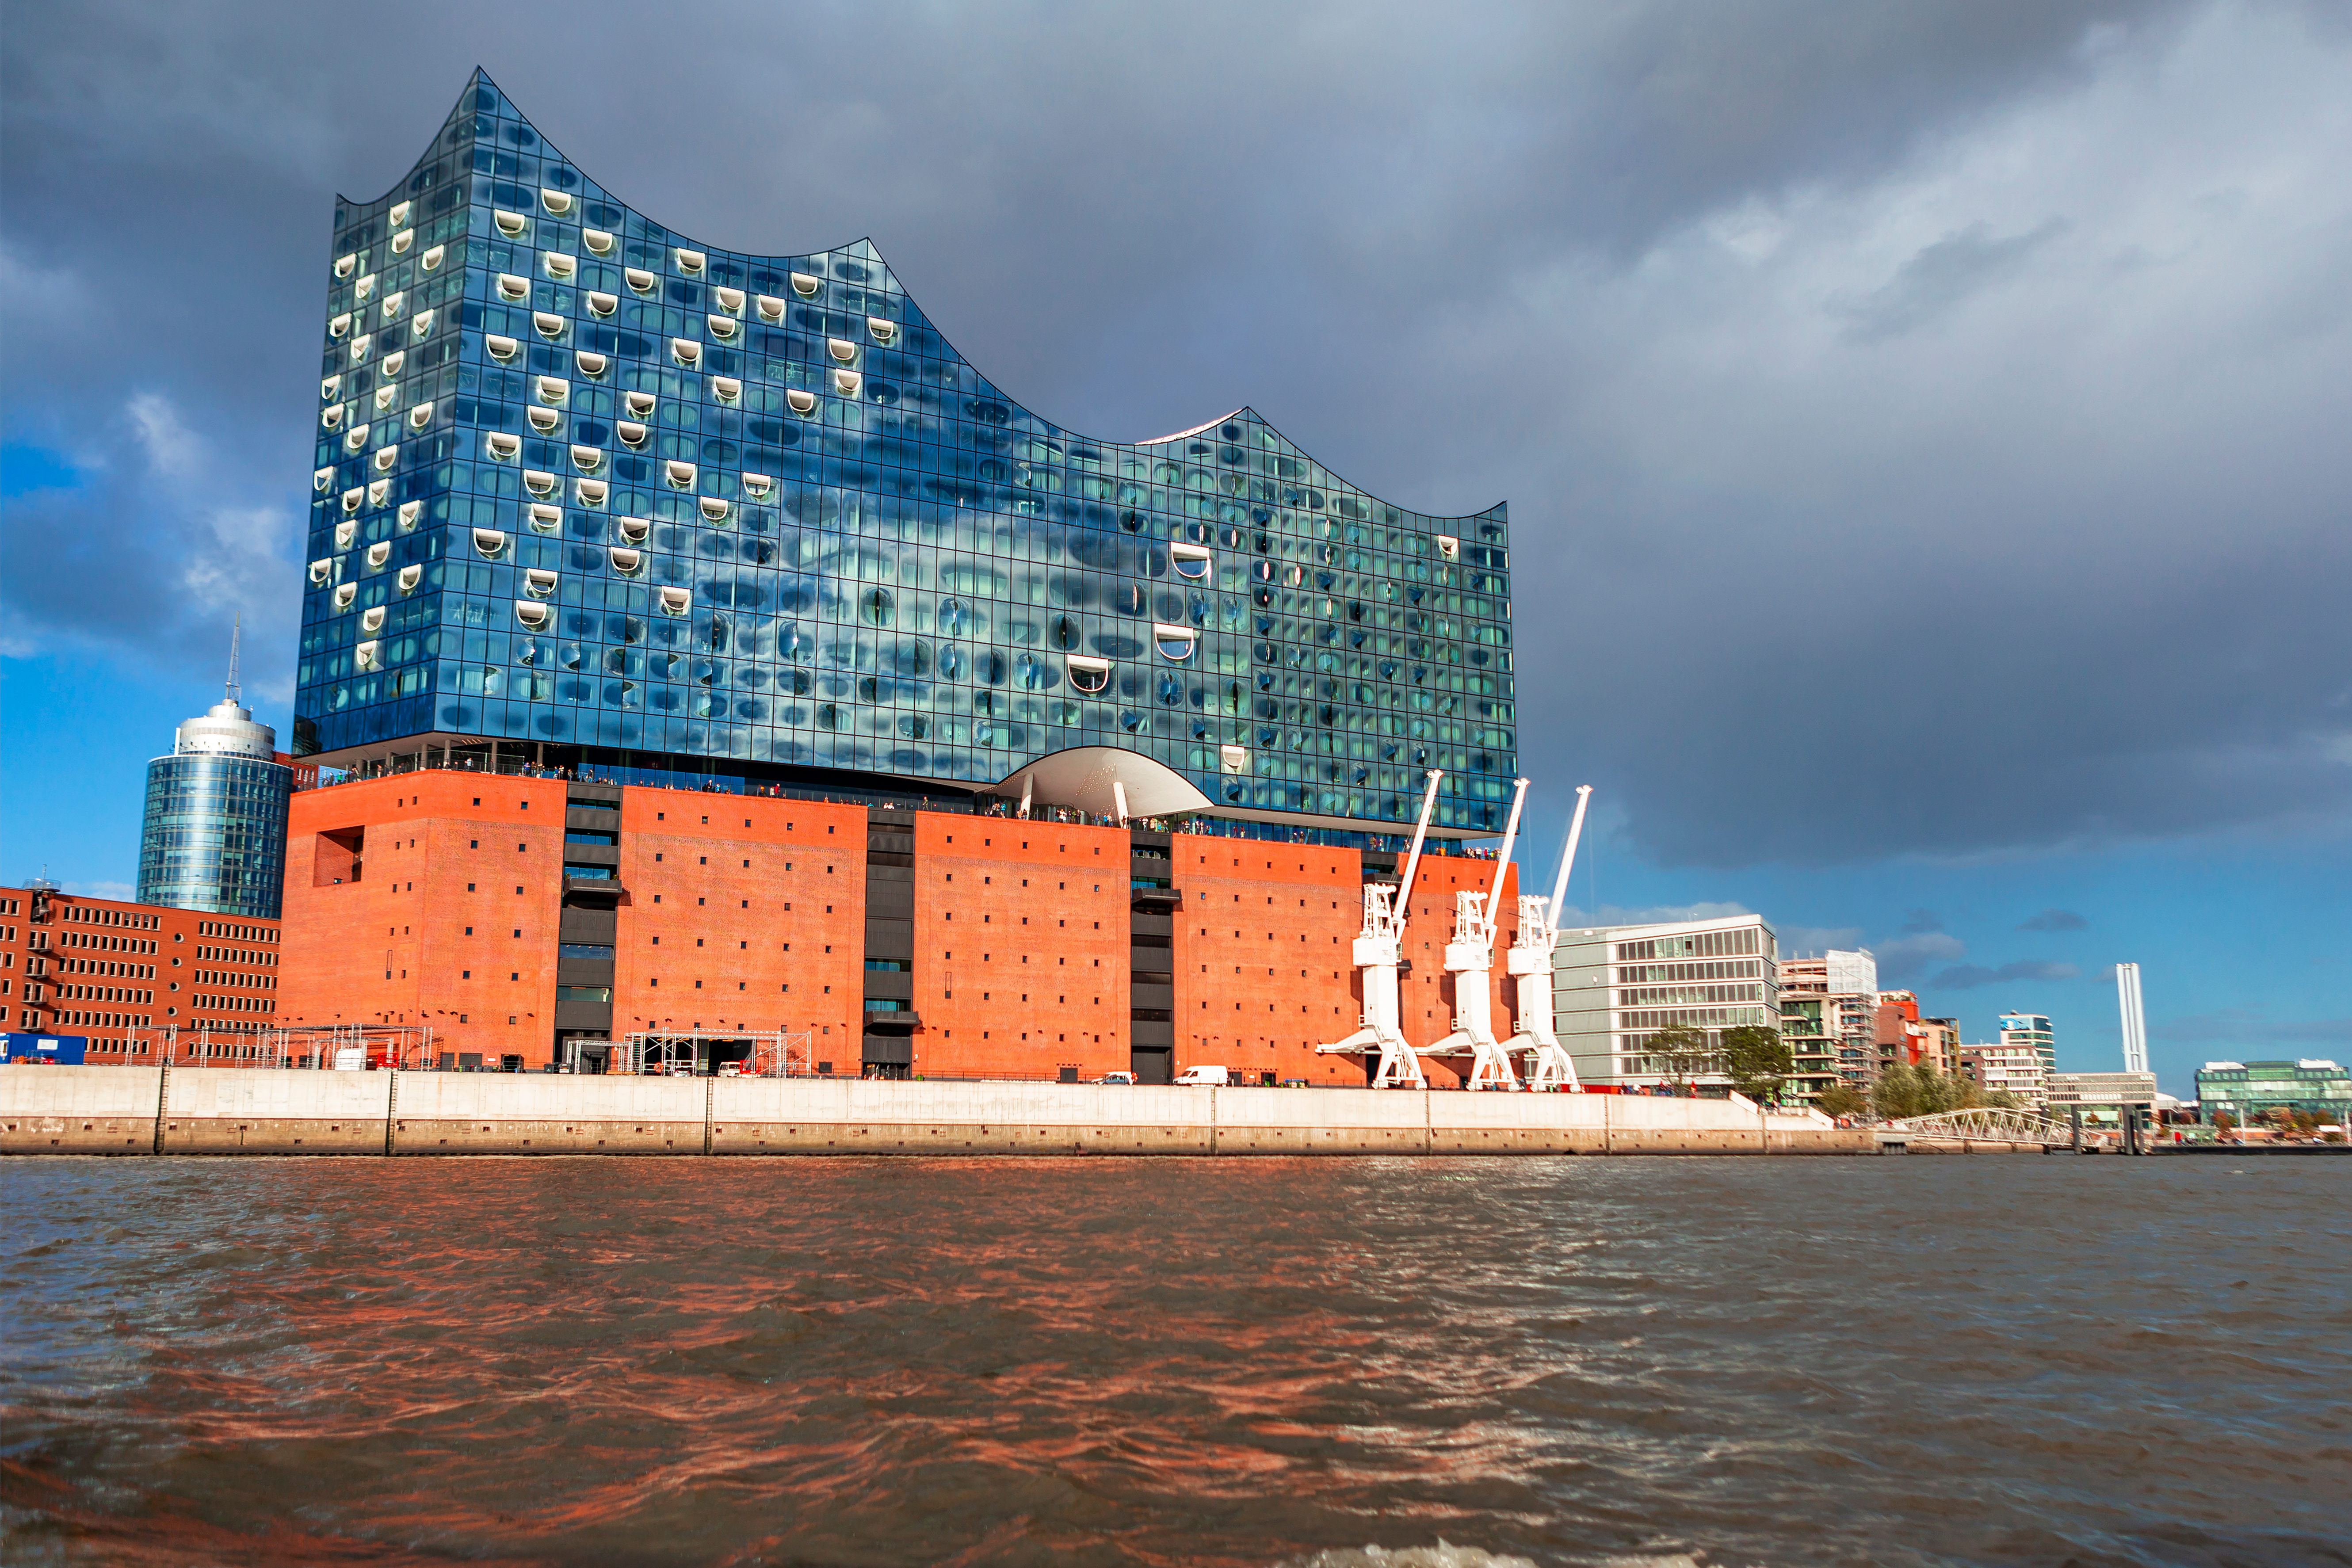 Na slici je moderna zgrada smještena je na obali rijeke. Donji dio zgrade je crvene boje, a gornji dio je u staklu sa valovitim krovom. U pozadini zgrade je grad.